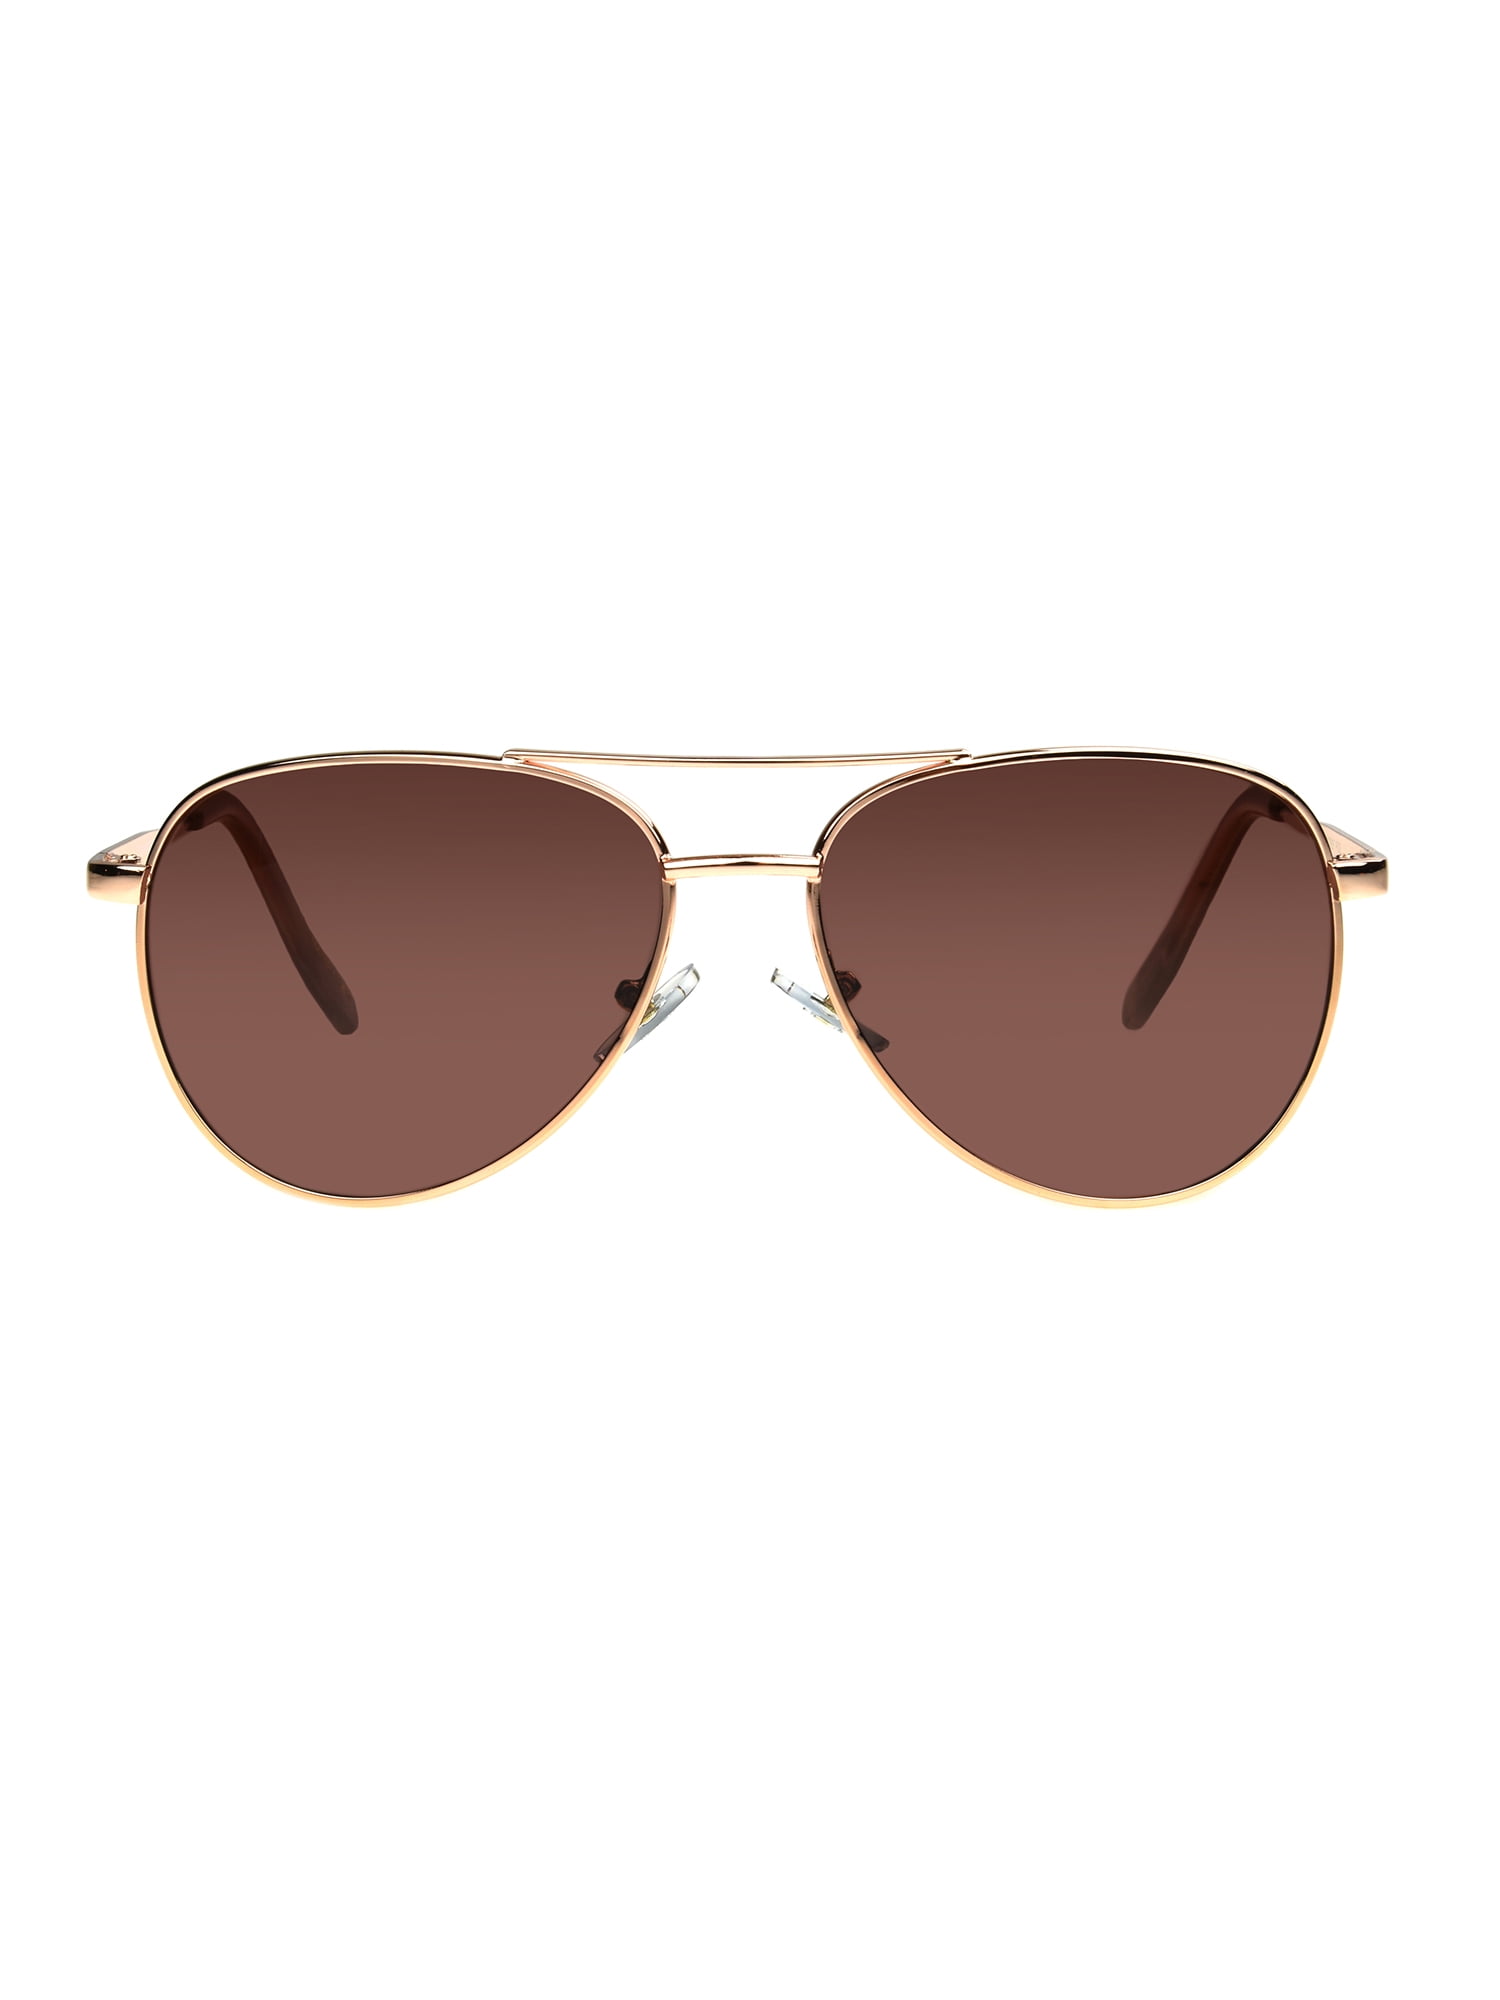 Aviator Frame Polarized Rose Gold Mirror Lens Sunglasses  Hot 100% UVA UVB 